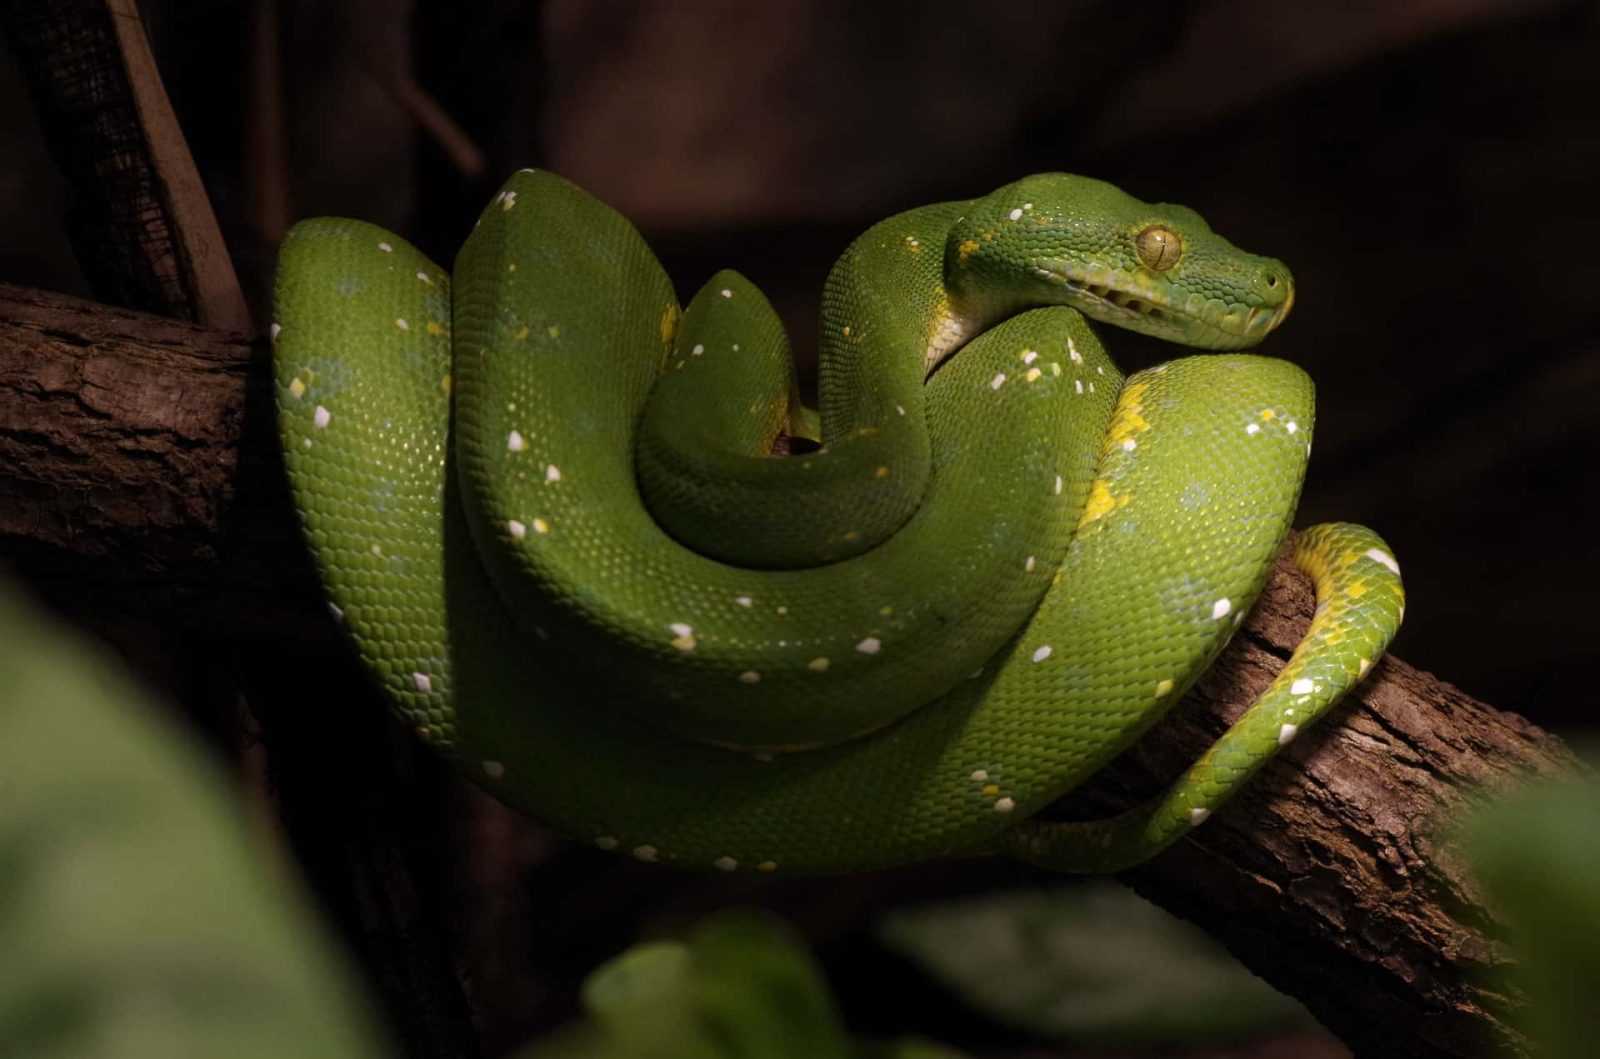 Jenis ular Sanca hijau (Morelia viridis)